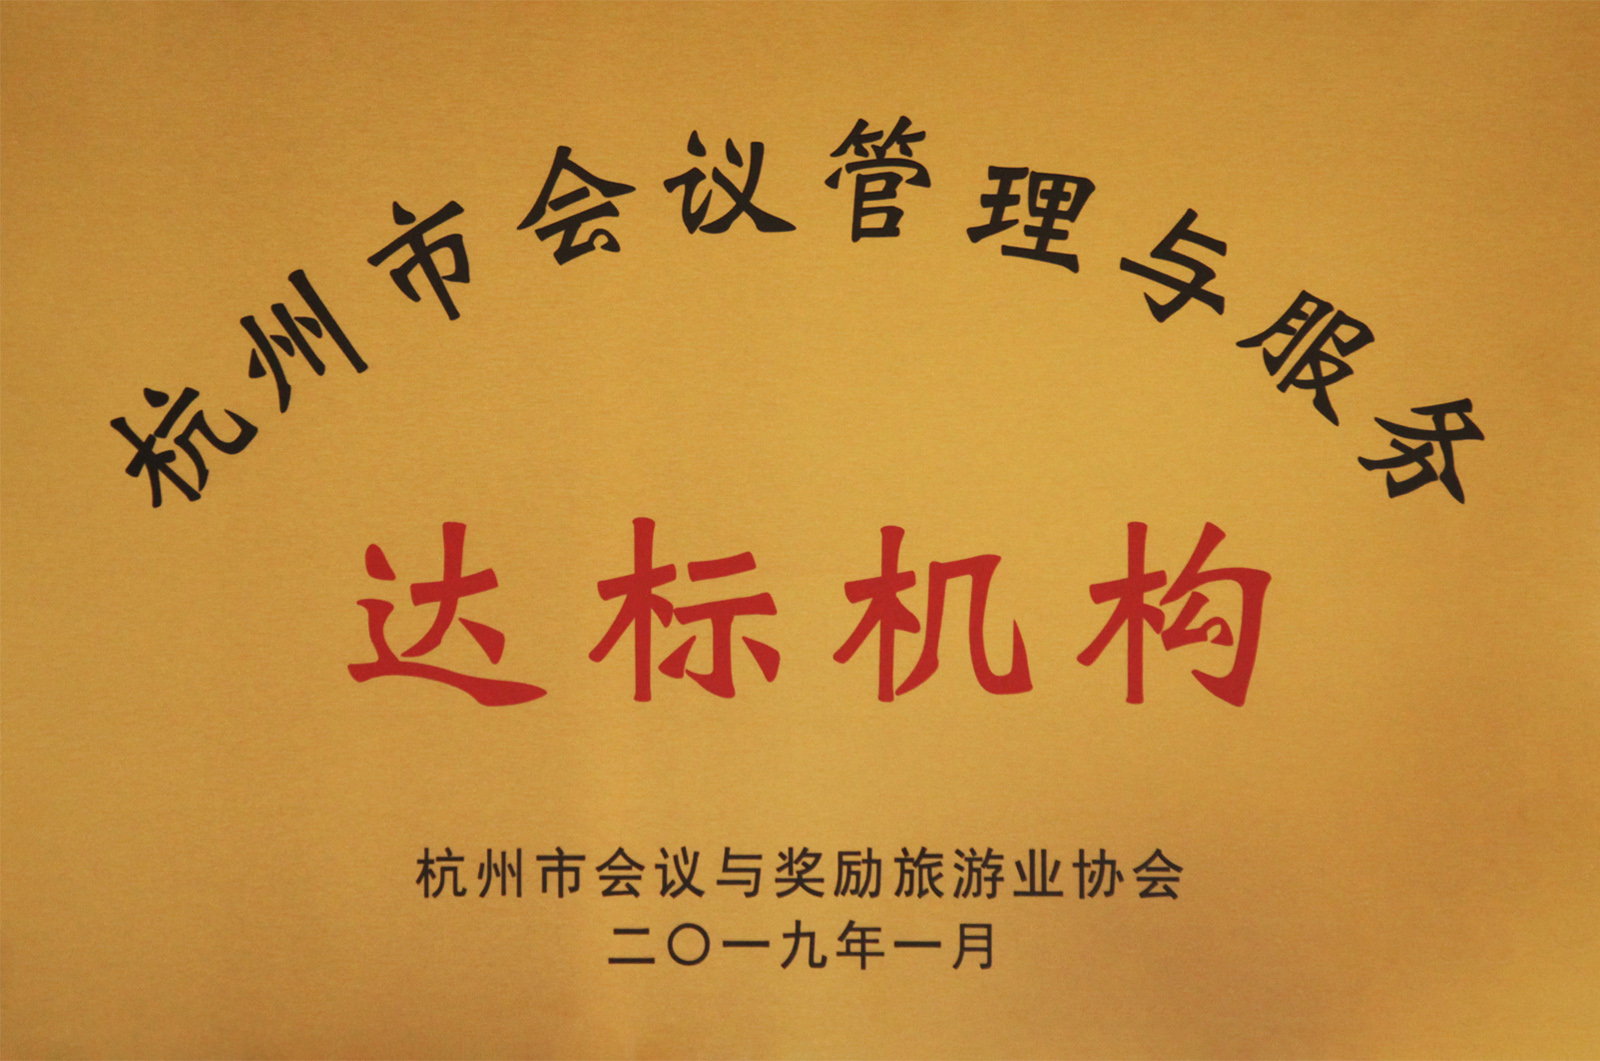 第一批“杭州市会议管理与服务达标机构”